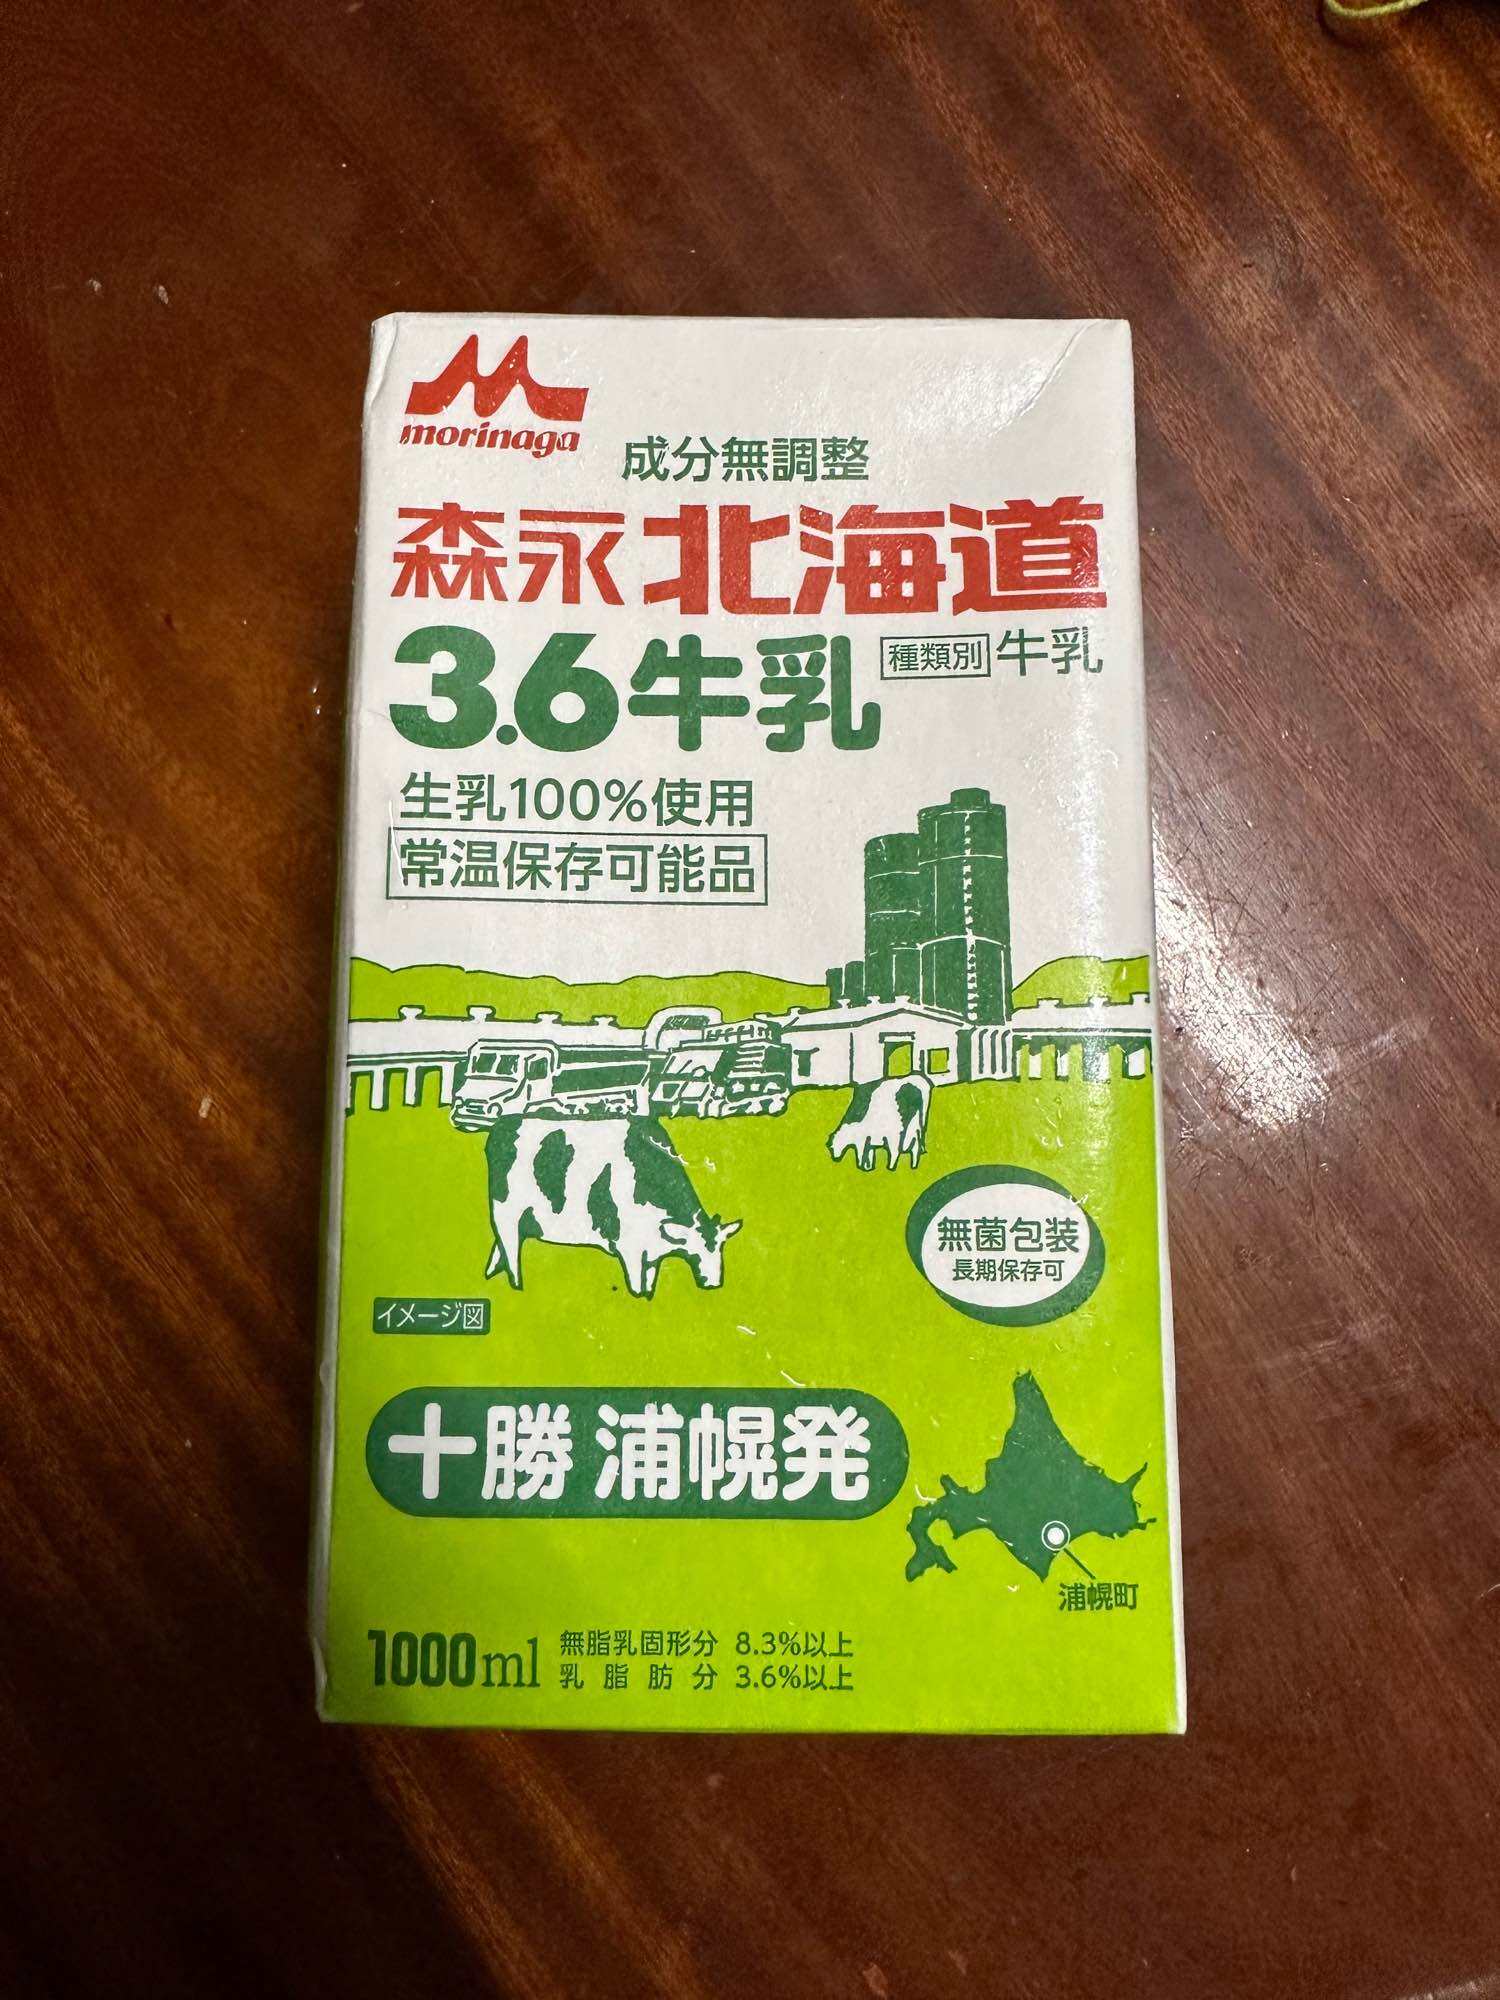 Sữa Thanh trùng Nhật Bản siêu ngon - Date 19 8 23